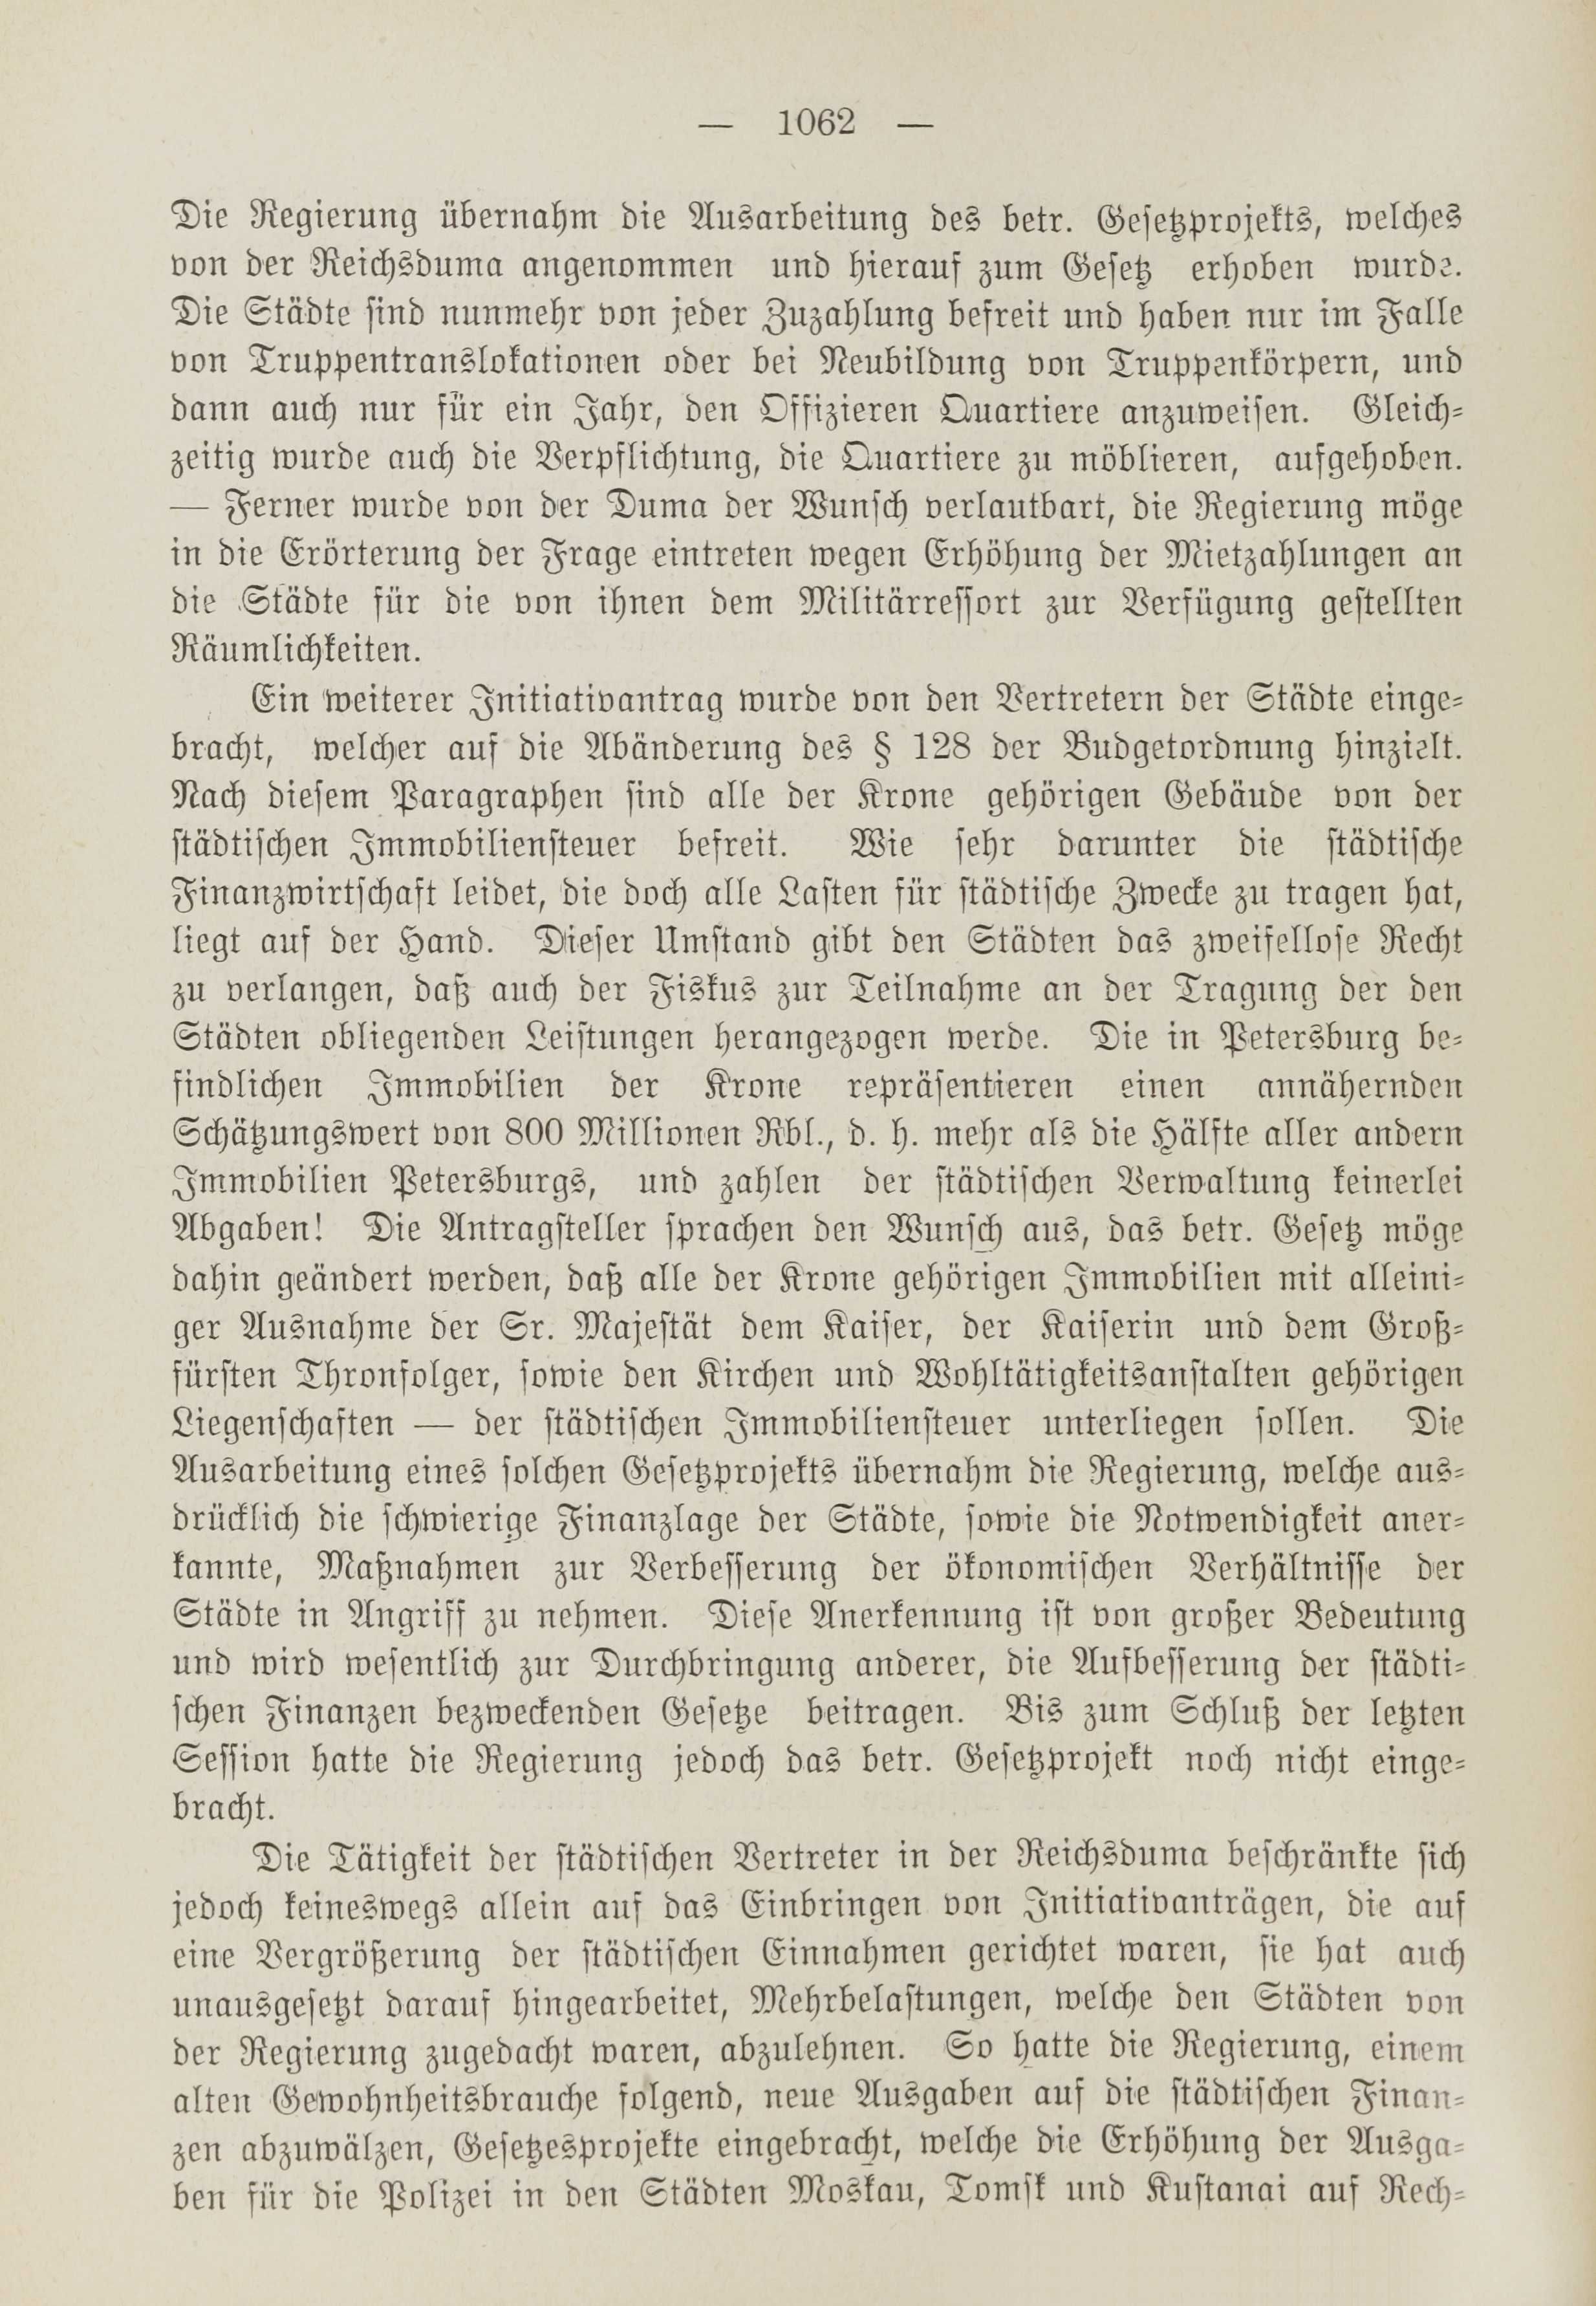 Deutsche Monatsschrift für Russland [1] (1912) | 1070. (1062) Основной текст